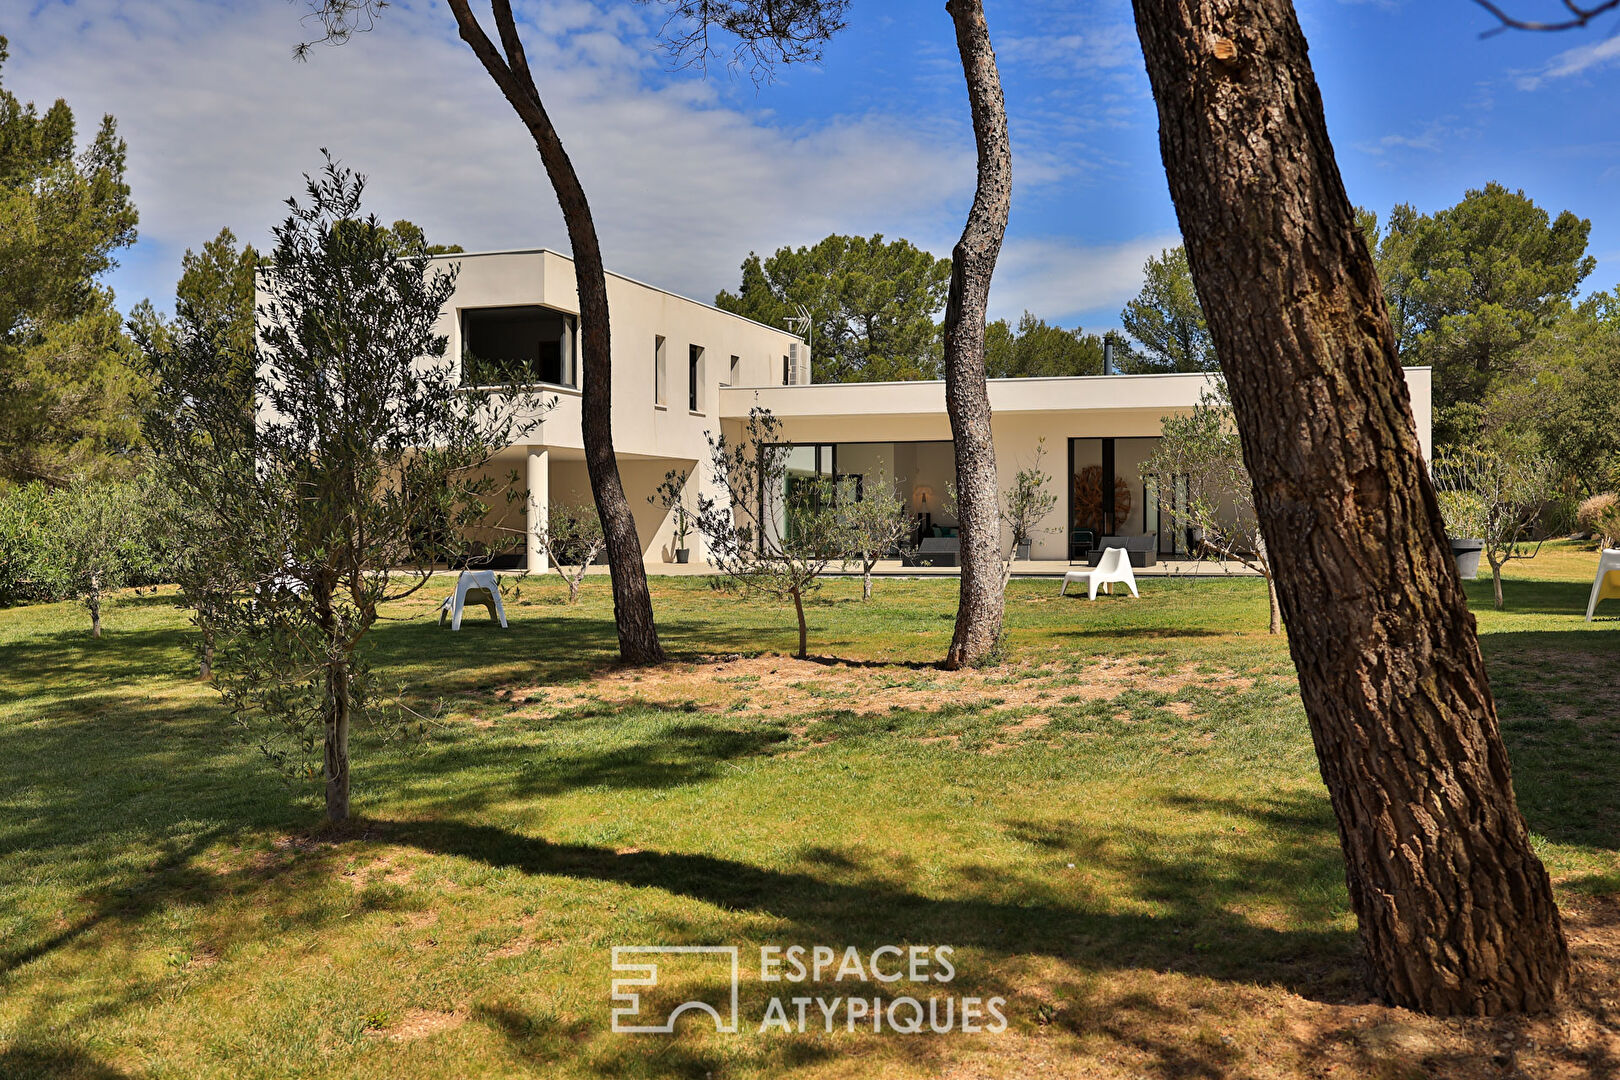 Design architect’s villa in a bubble of greenery